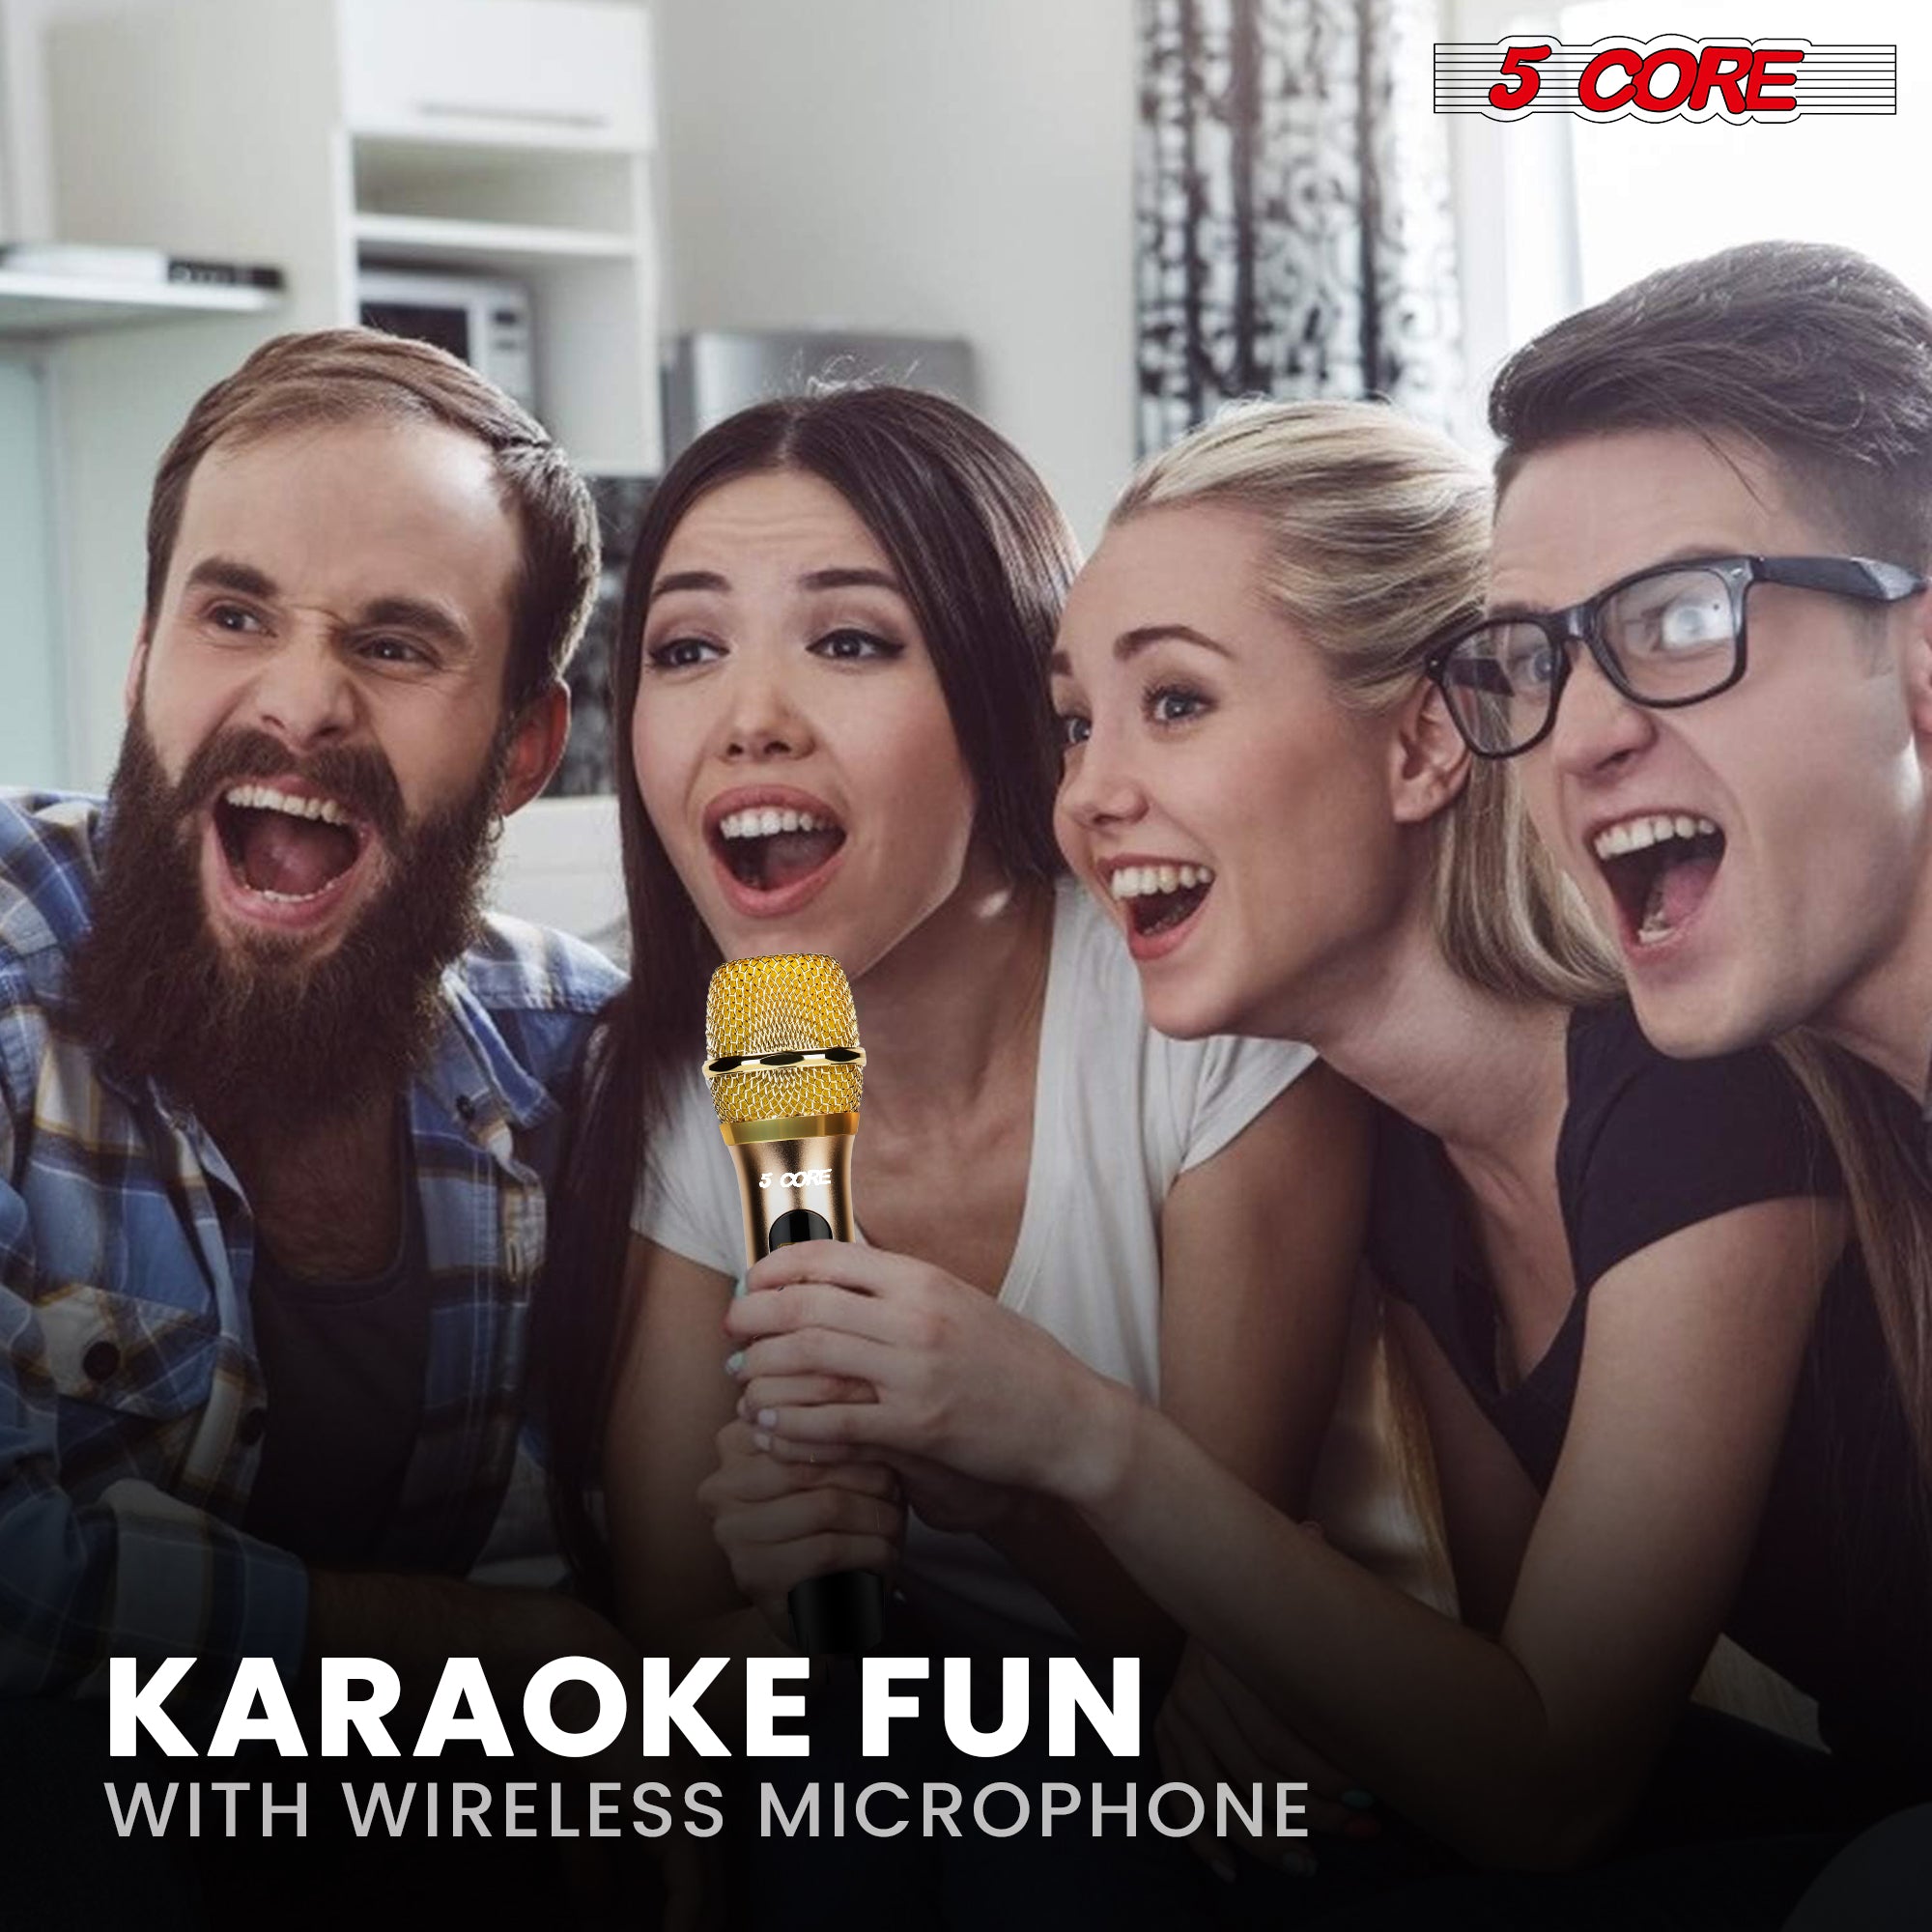 karaoke fun with wireless microphone